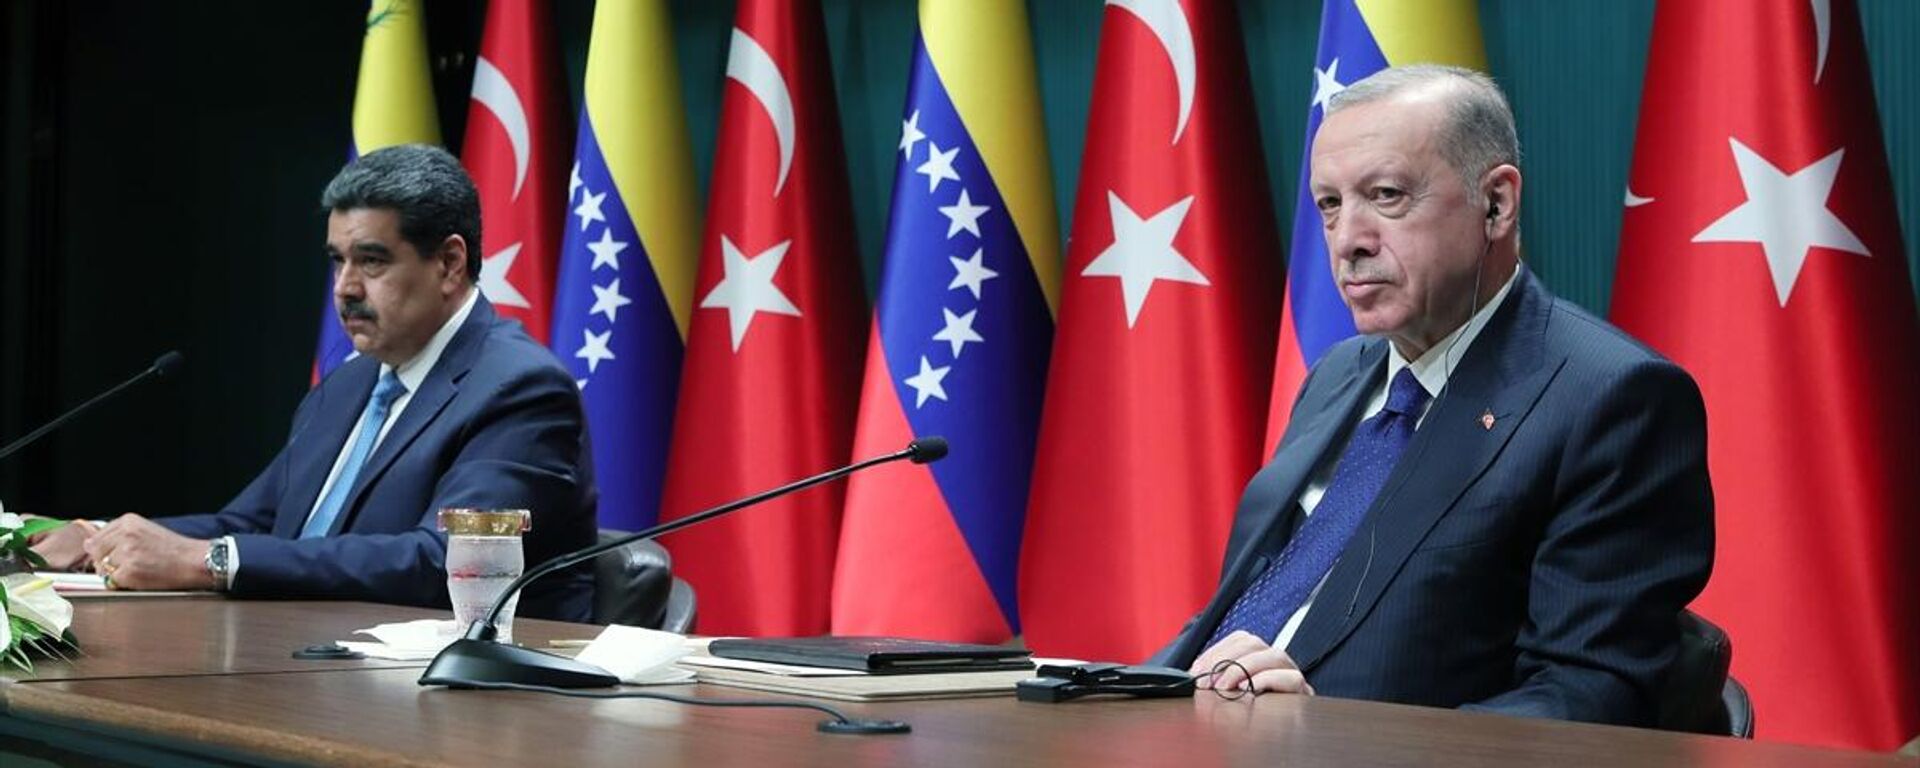 Cumhurbaşkanı Erdoğan ile Venezüella Devlet Başkanı Maduro ortak basın toplantısı düzenledi - Sputnik Türkiye, 1920, 08.06.2022